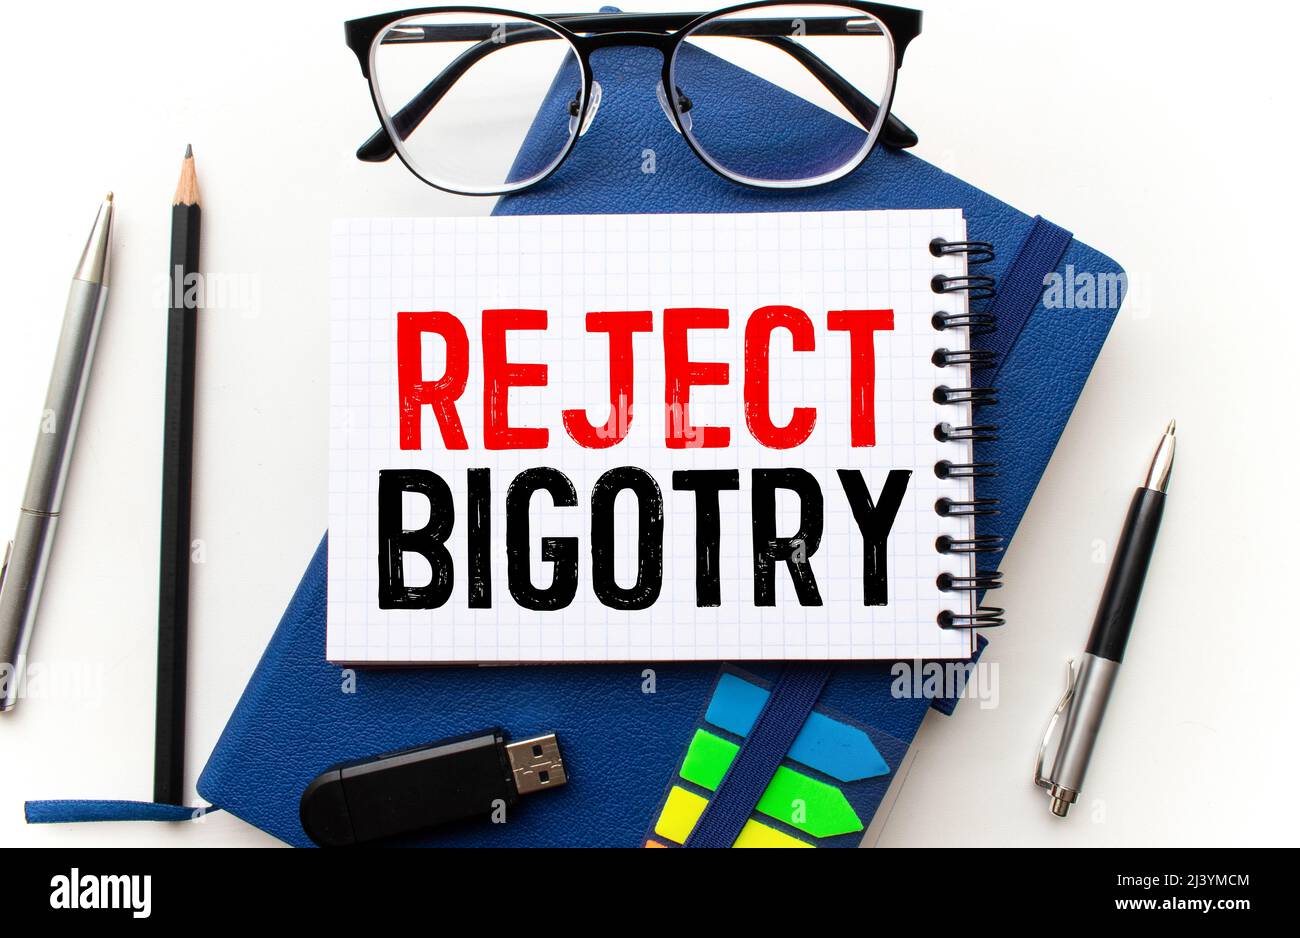 Text verhindern Bigotry in Blau unter einem Drahtgeflecht geschrieben Stockfoto